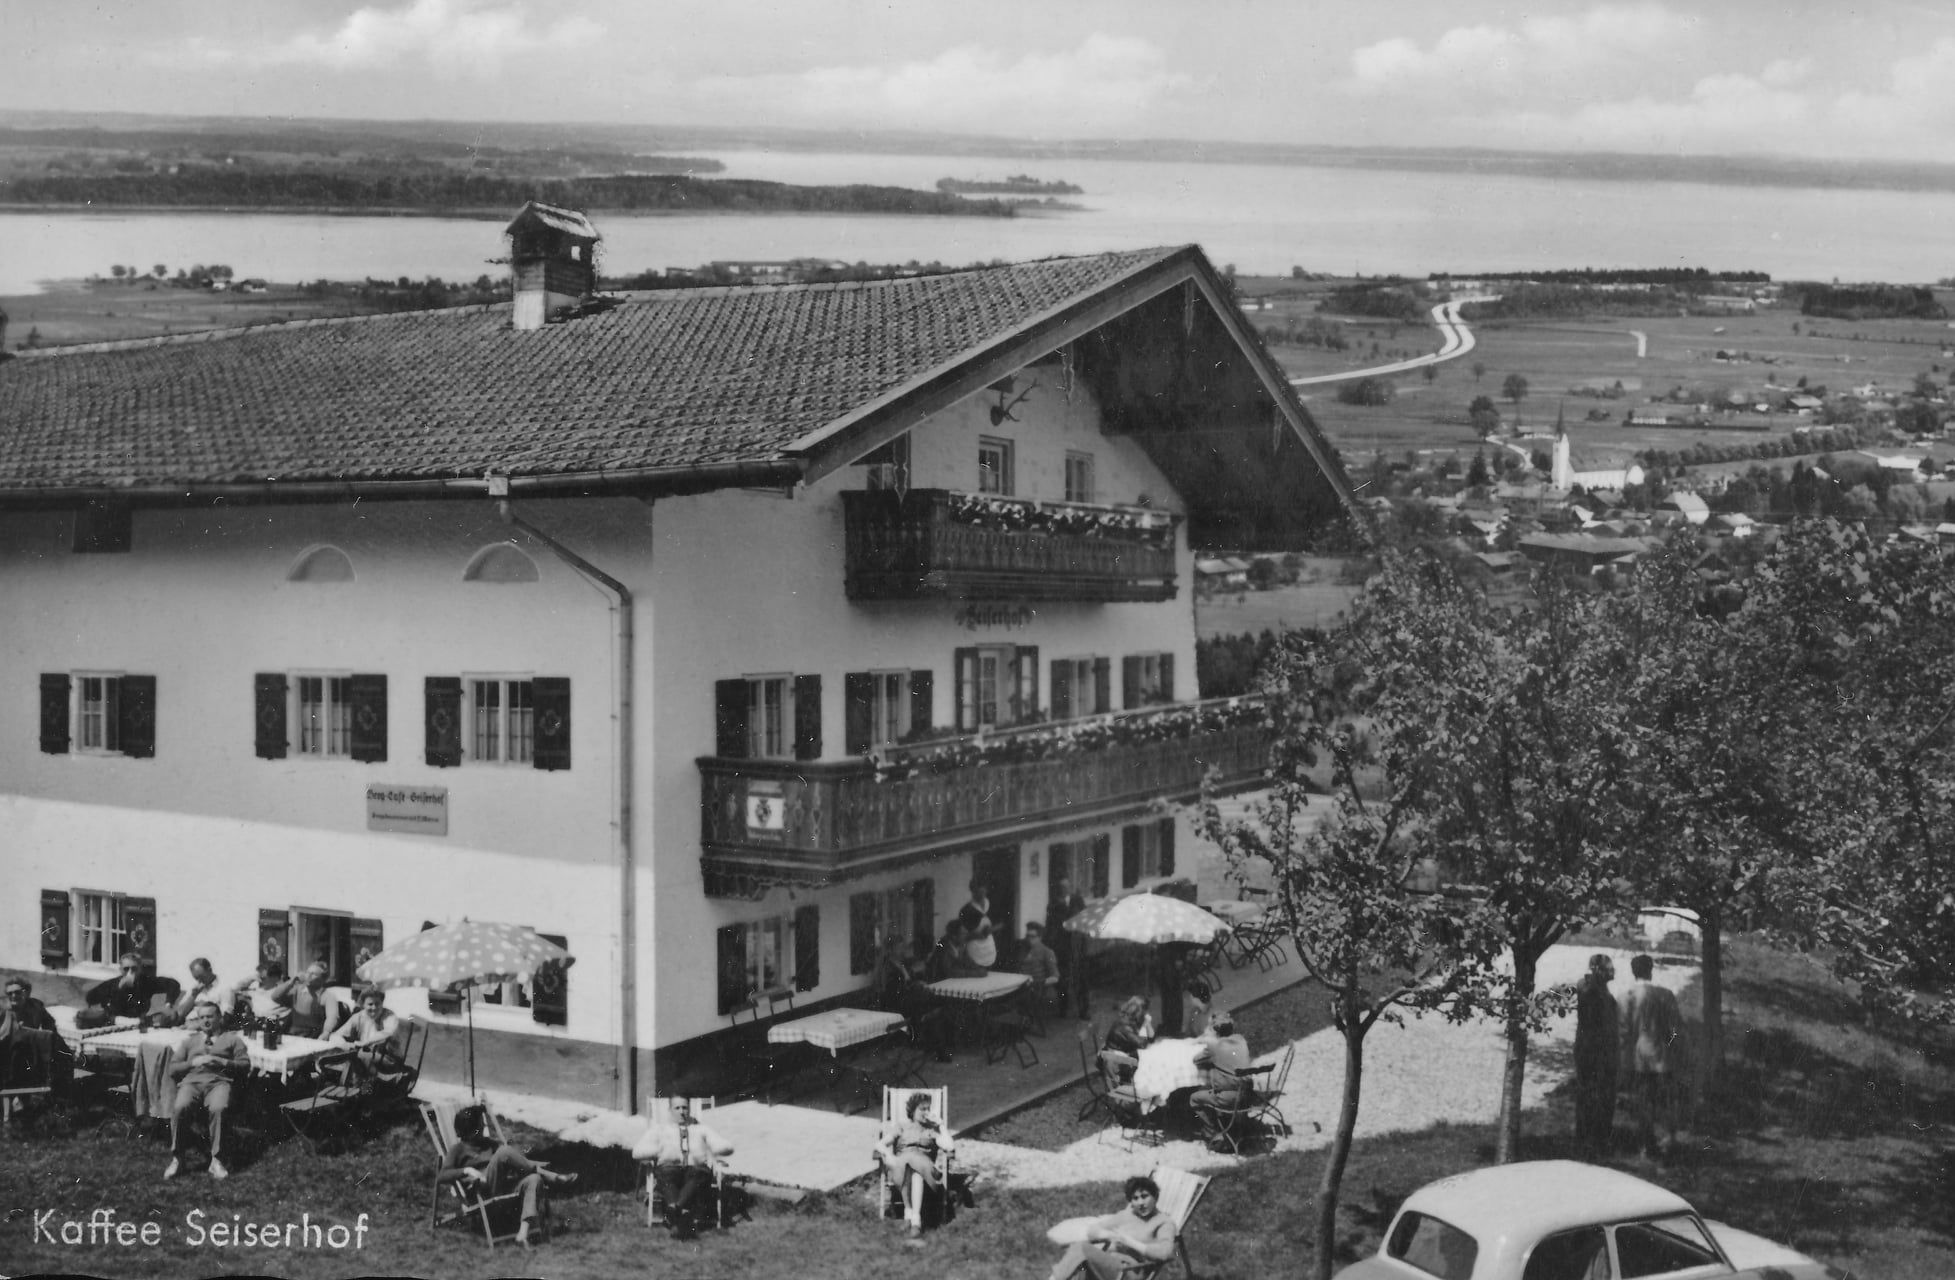 Fotografie des Seiserhof in Bernau am Chiemsee aus den 1960er Jahren zur Sommerzeit mit vielen Sommerfrischlern und Blick auf den Chiemsee